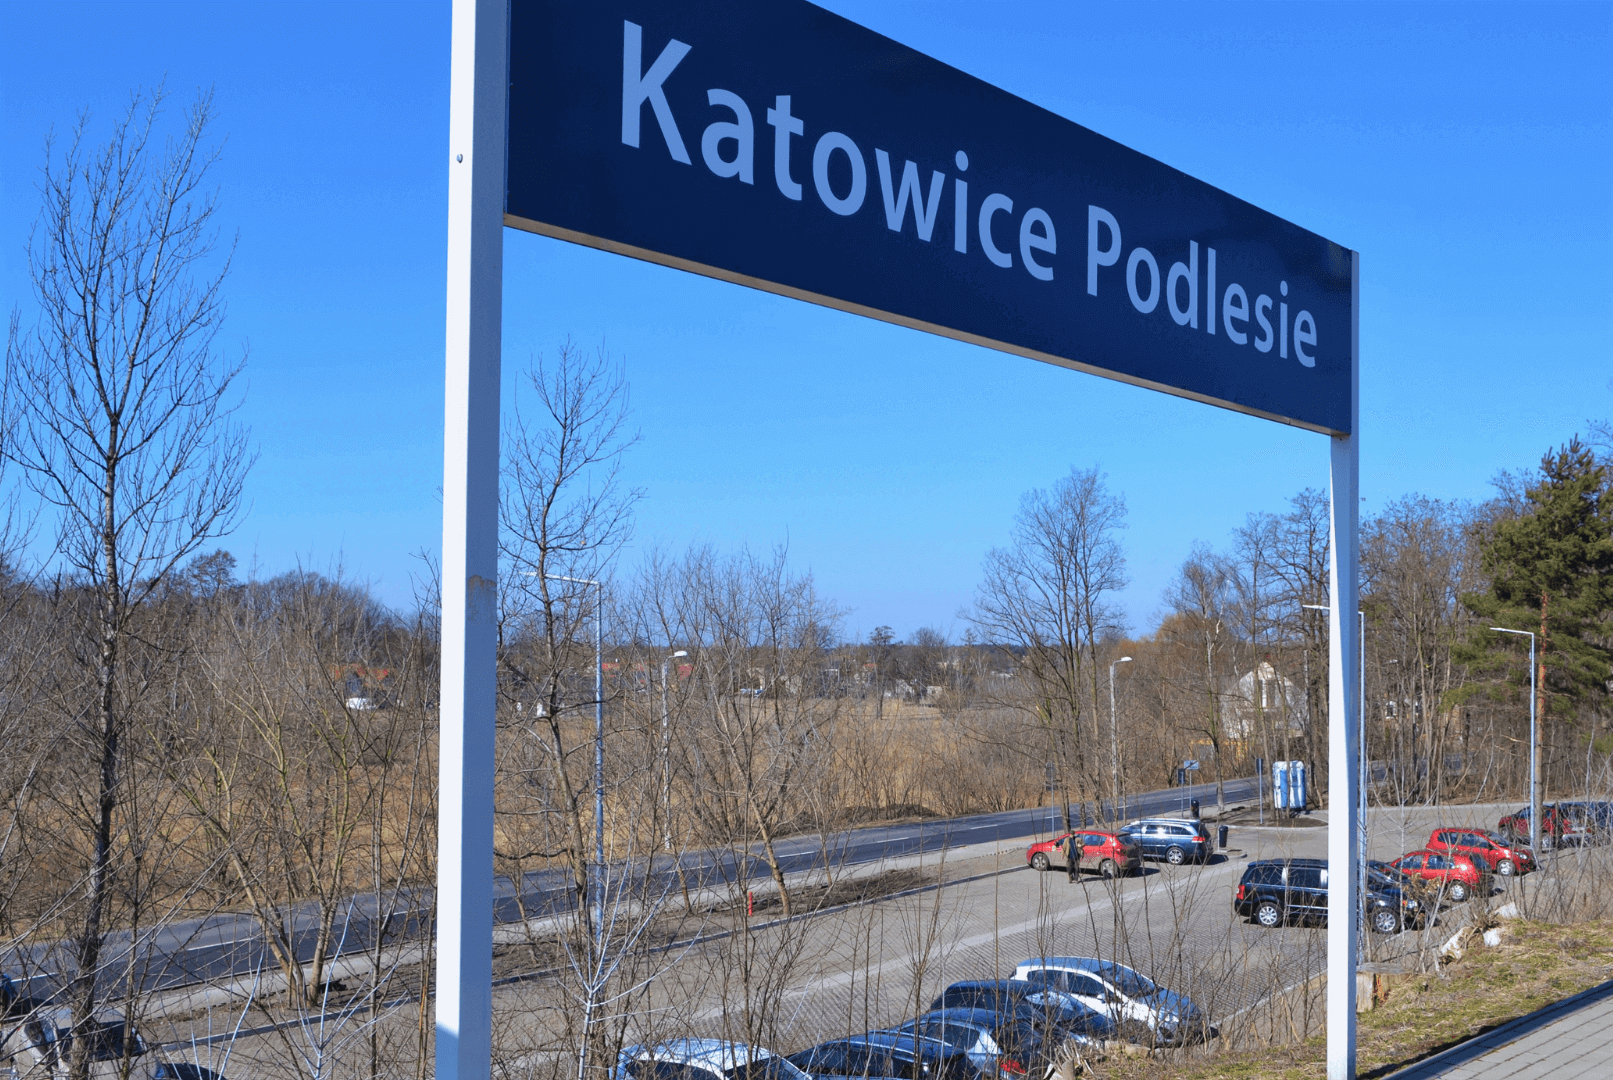 Stacja Katowice Podlesie